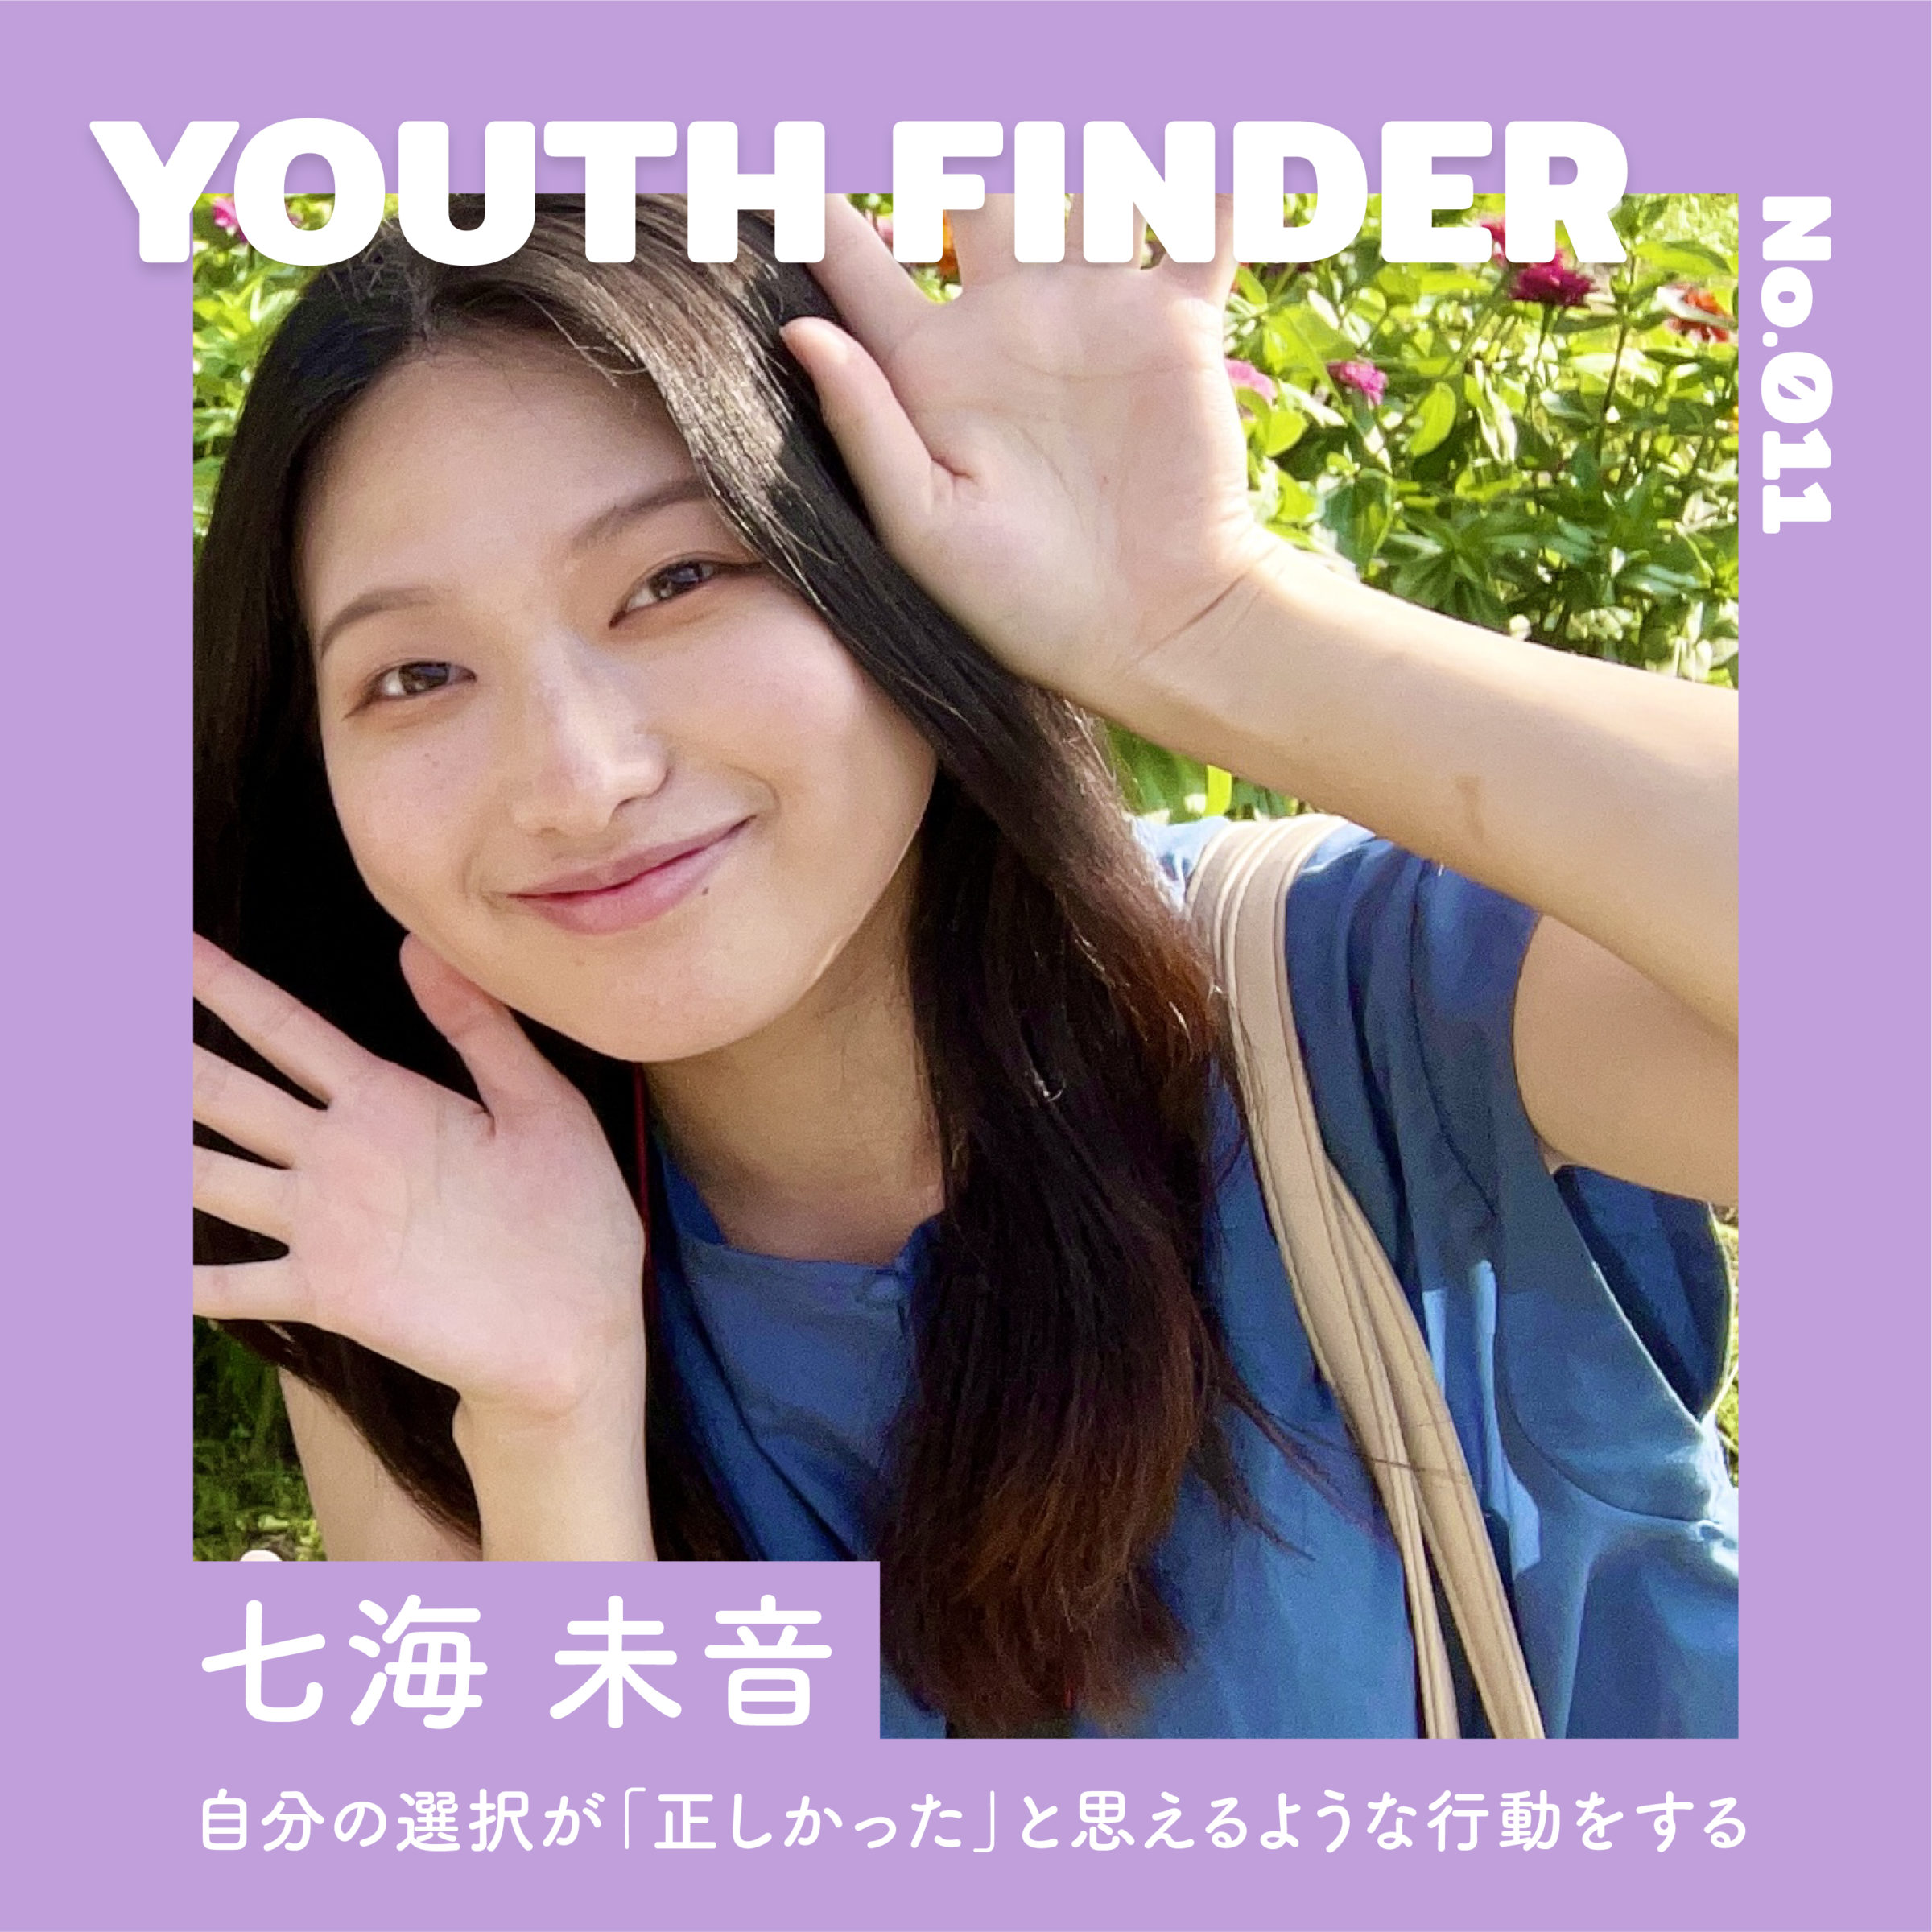 学生ライターとして福島のリアルな情報を取材・発信する 七海未音さん【Youth Finder】のサムネイル